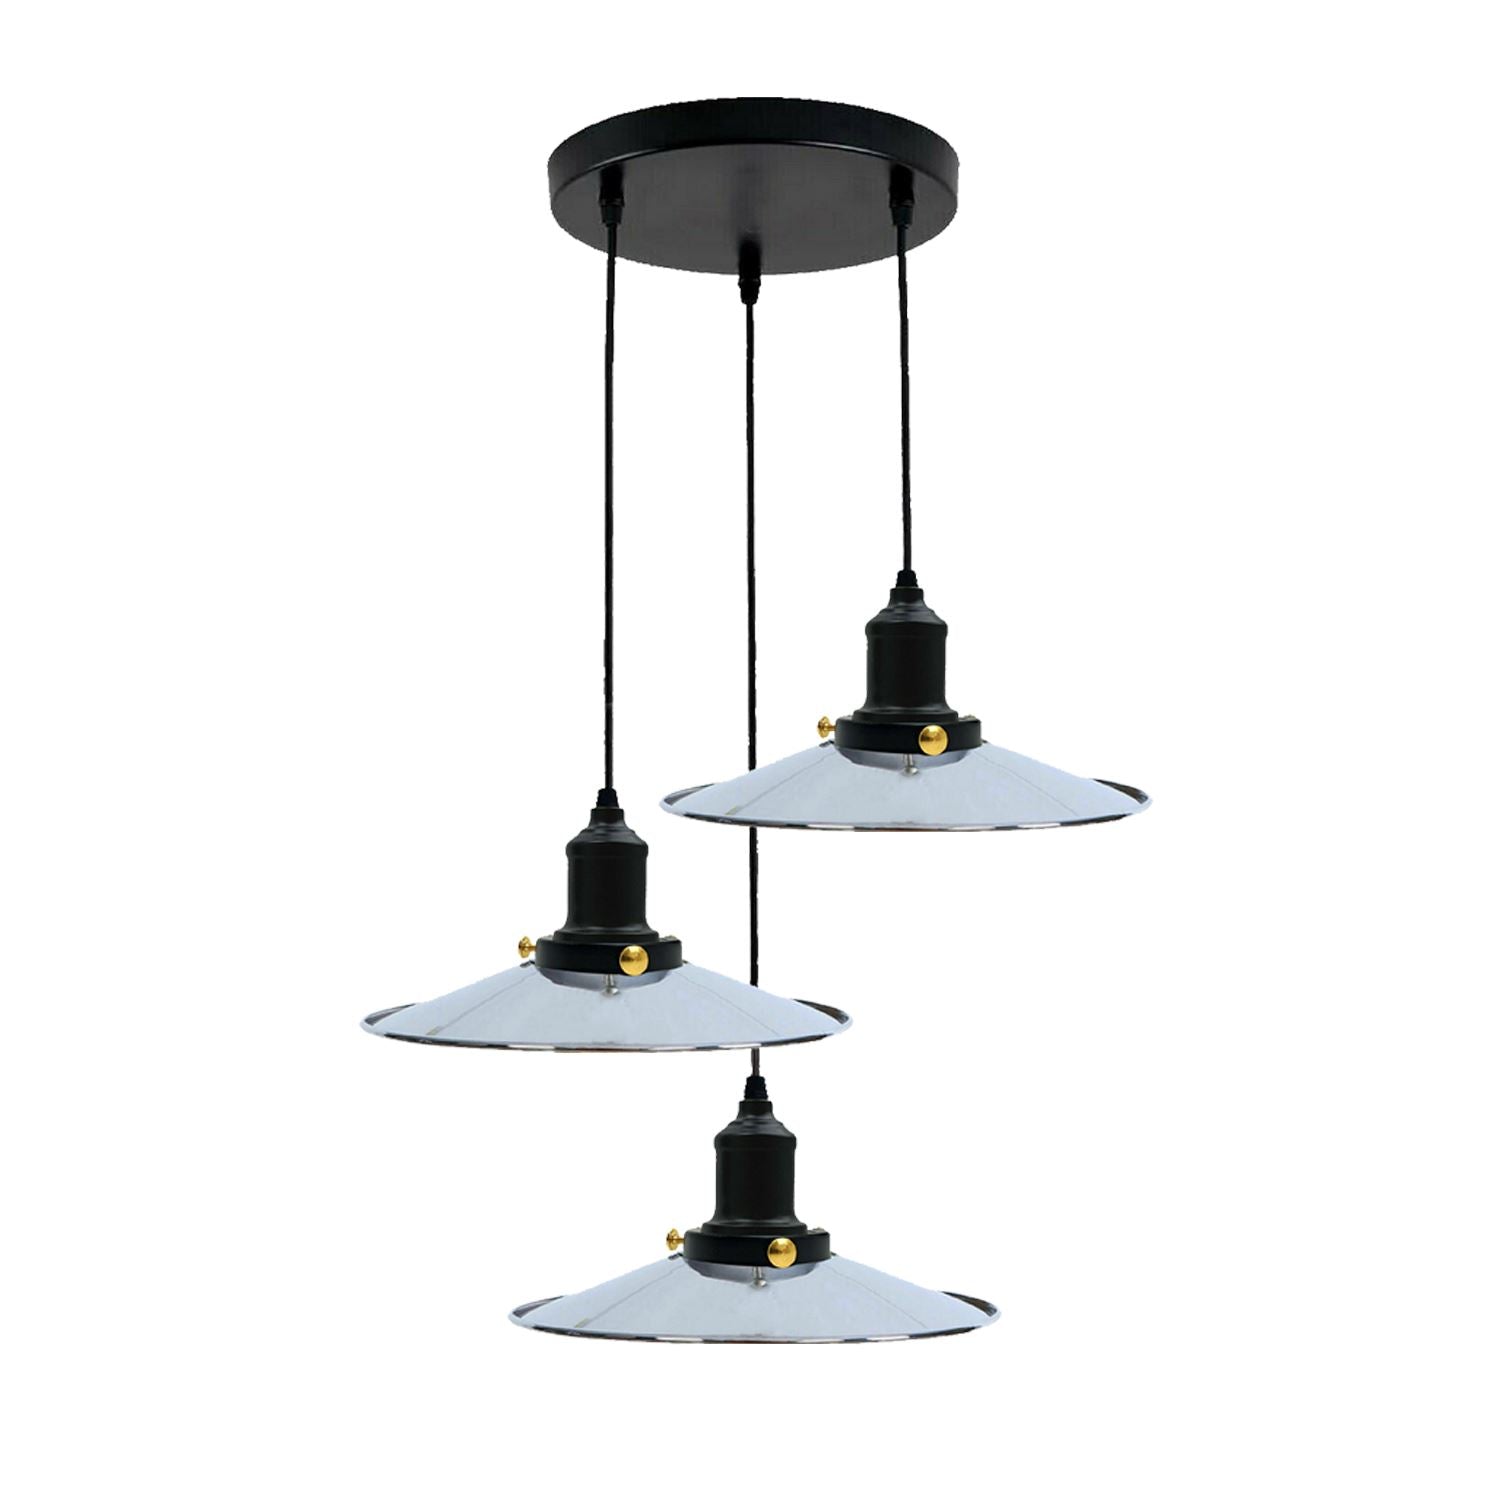 Retro Deckenlampe Industrie Tisch Pendelleuchte Hängelampe Esstisch Wohnzimmer